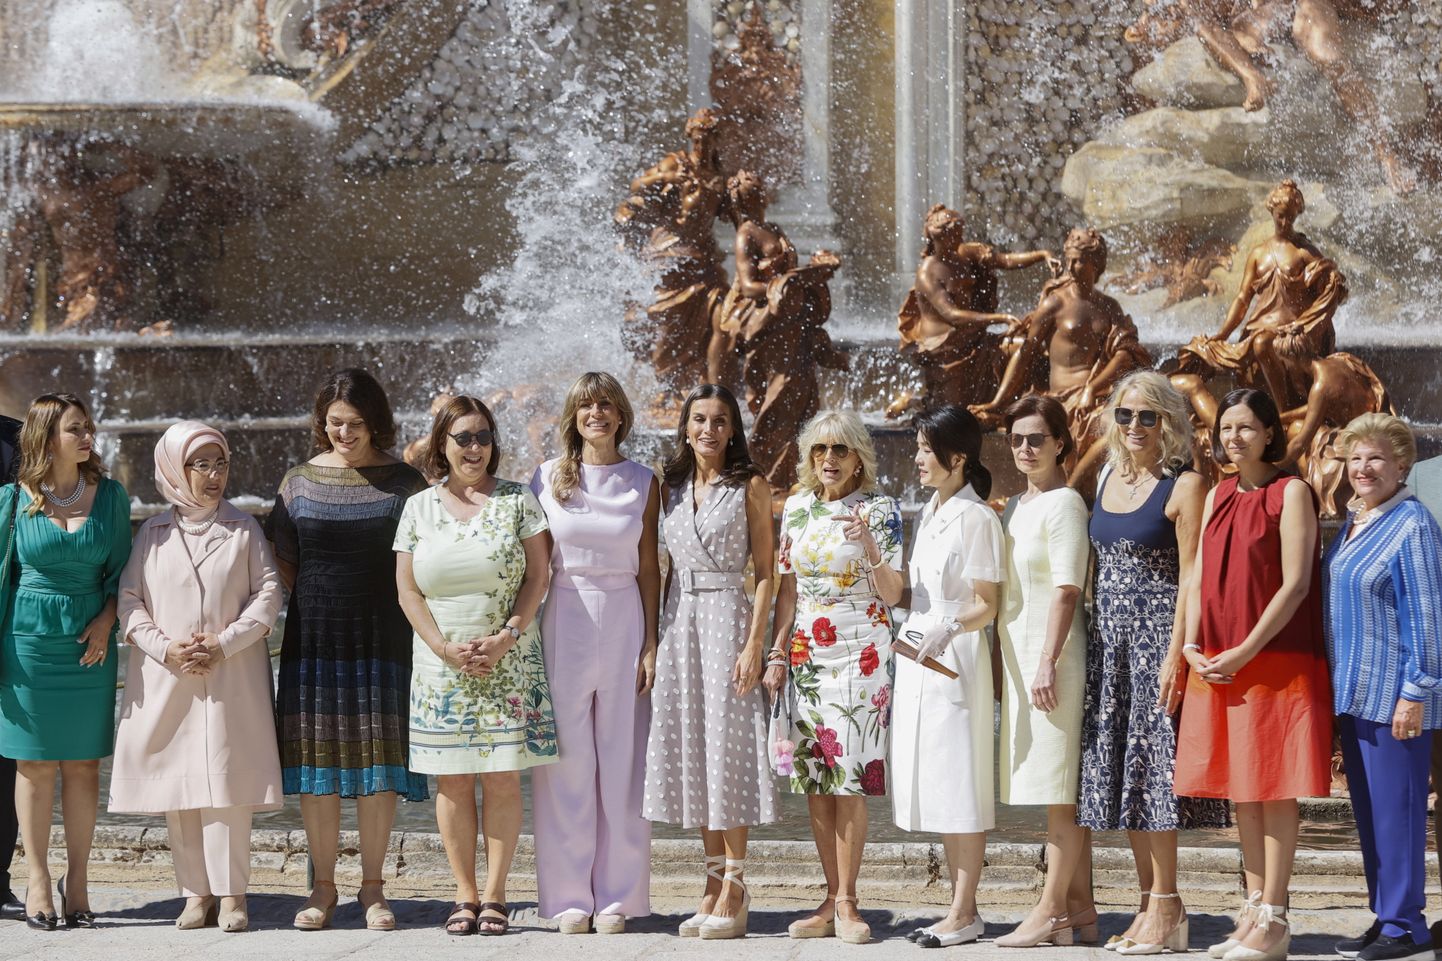 NATO liidrite naised külastasid 29. juunil Segoviat, neid võõrustas Hispaania kuninganna Letizia. NATO tippkohtumine leiab aset 29.-30. juunil 2022 Madridis